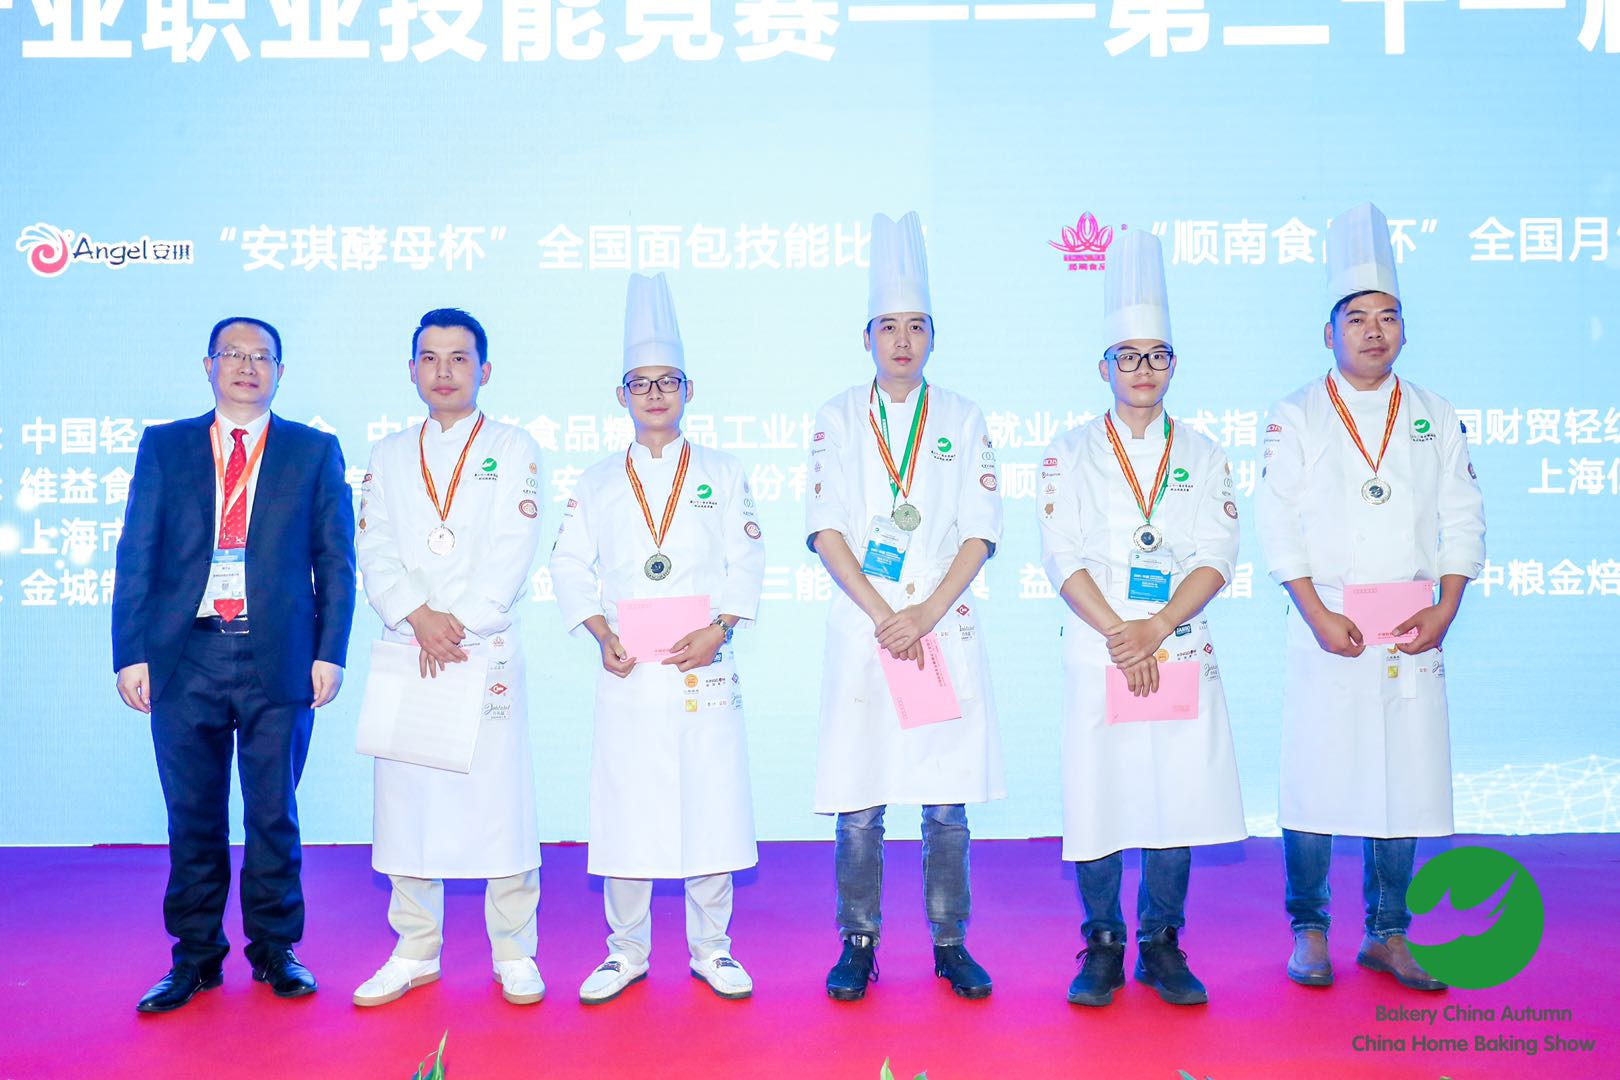 广州酒家集团利口福公司在第二十一届全国焙烤职业技能竞赛全国赛中荣获两金一银两优胜的优异成绩